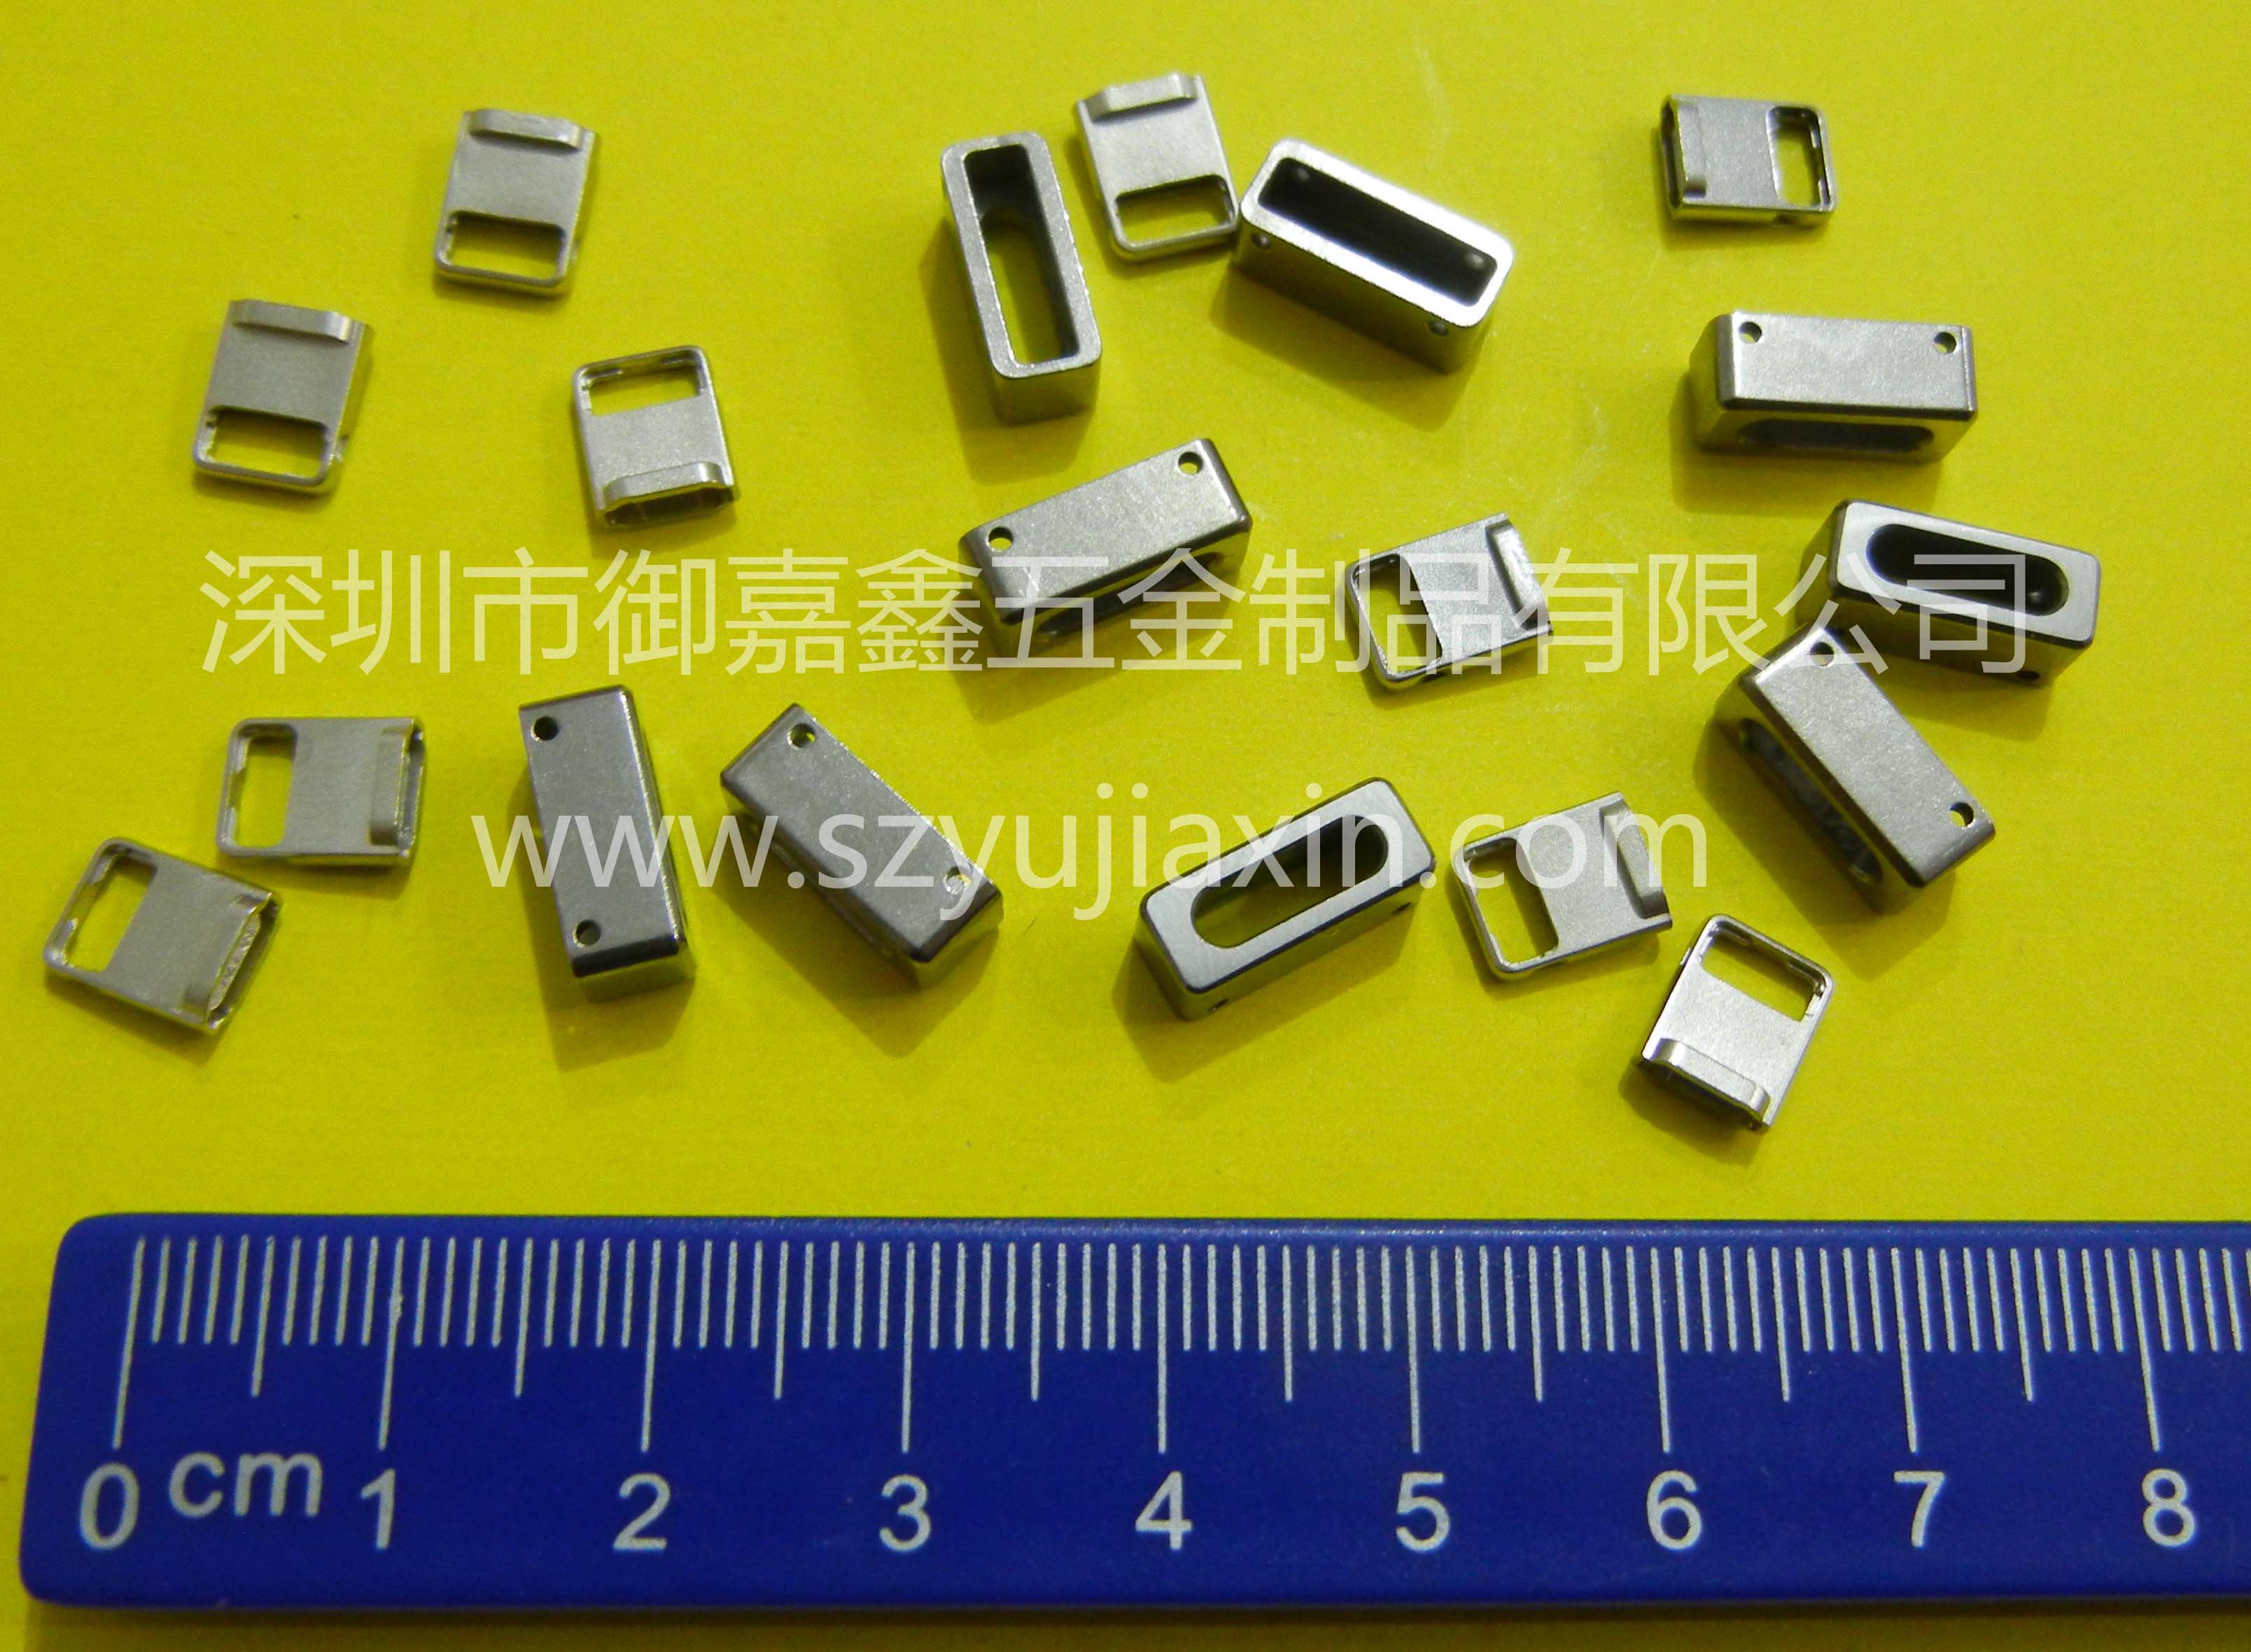 Metallspritzteile | Apple 6 Zubehör | Präzisionsstrukturteile | Mikrostrukturteile | Yujiaxin-Gruppe | Gelbe Seiten von Shenzhen Enterprise